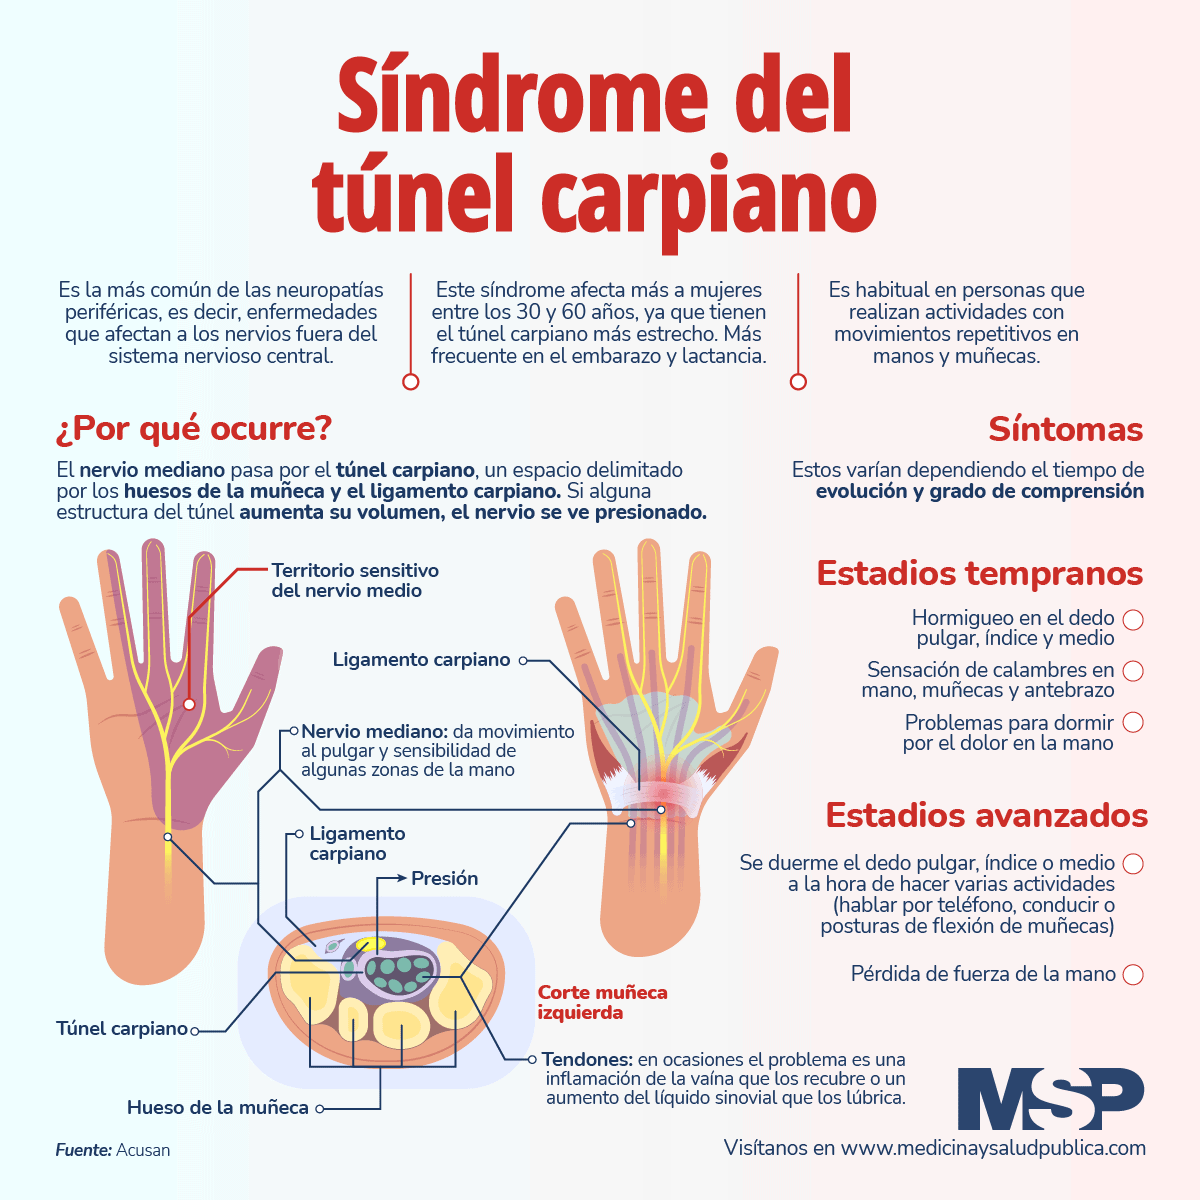 Diagnóstico y tratamiento del Síndrome del Túnel Carpiano.